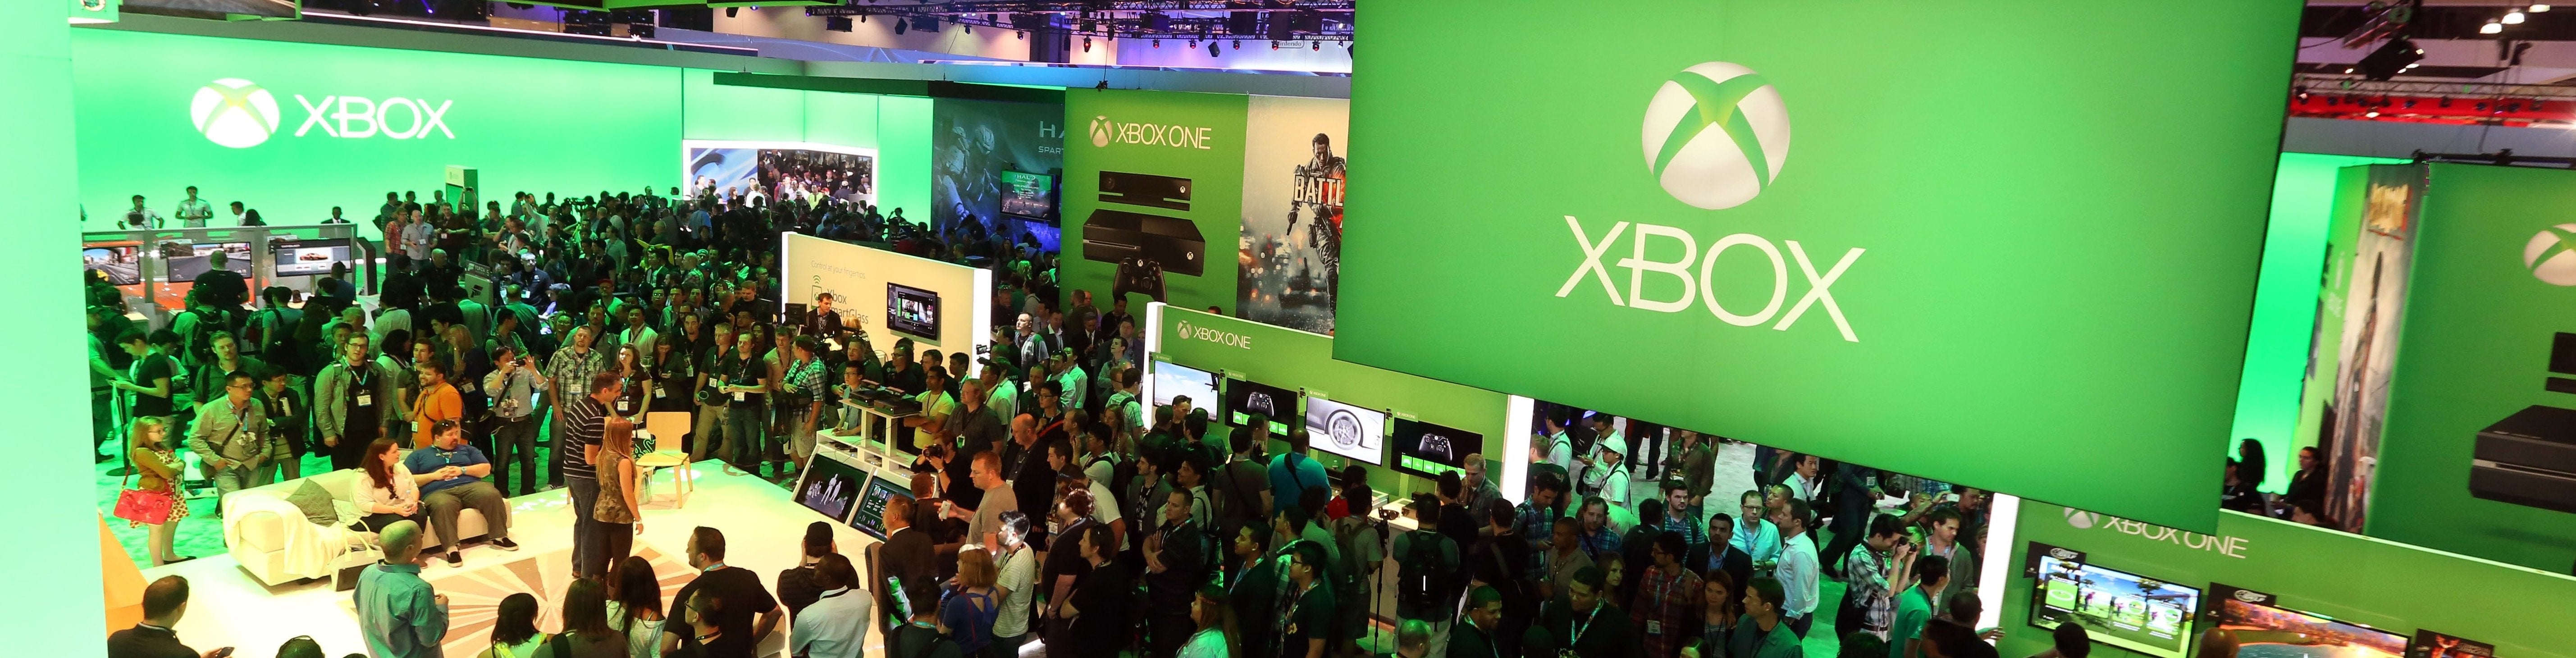 Imagen para E3 2014: Conferencia de Microsoft